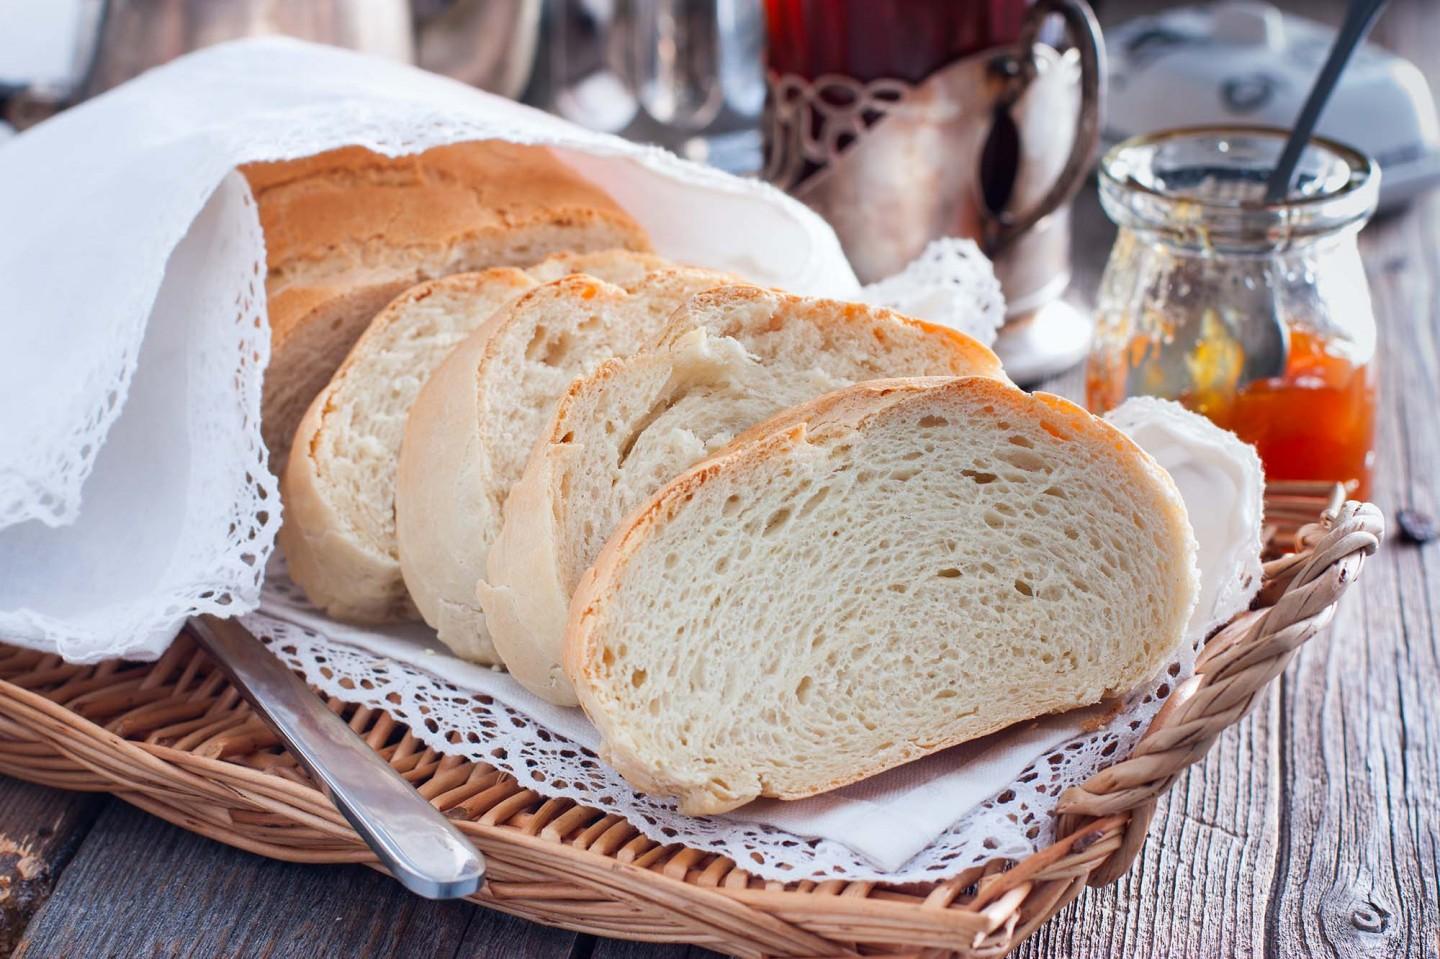 Який сорт хліба найшкідливіший: з чого його роблять, та кому небезпечно вживати